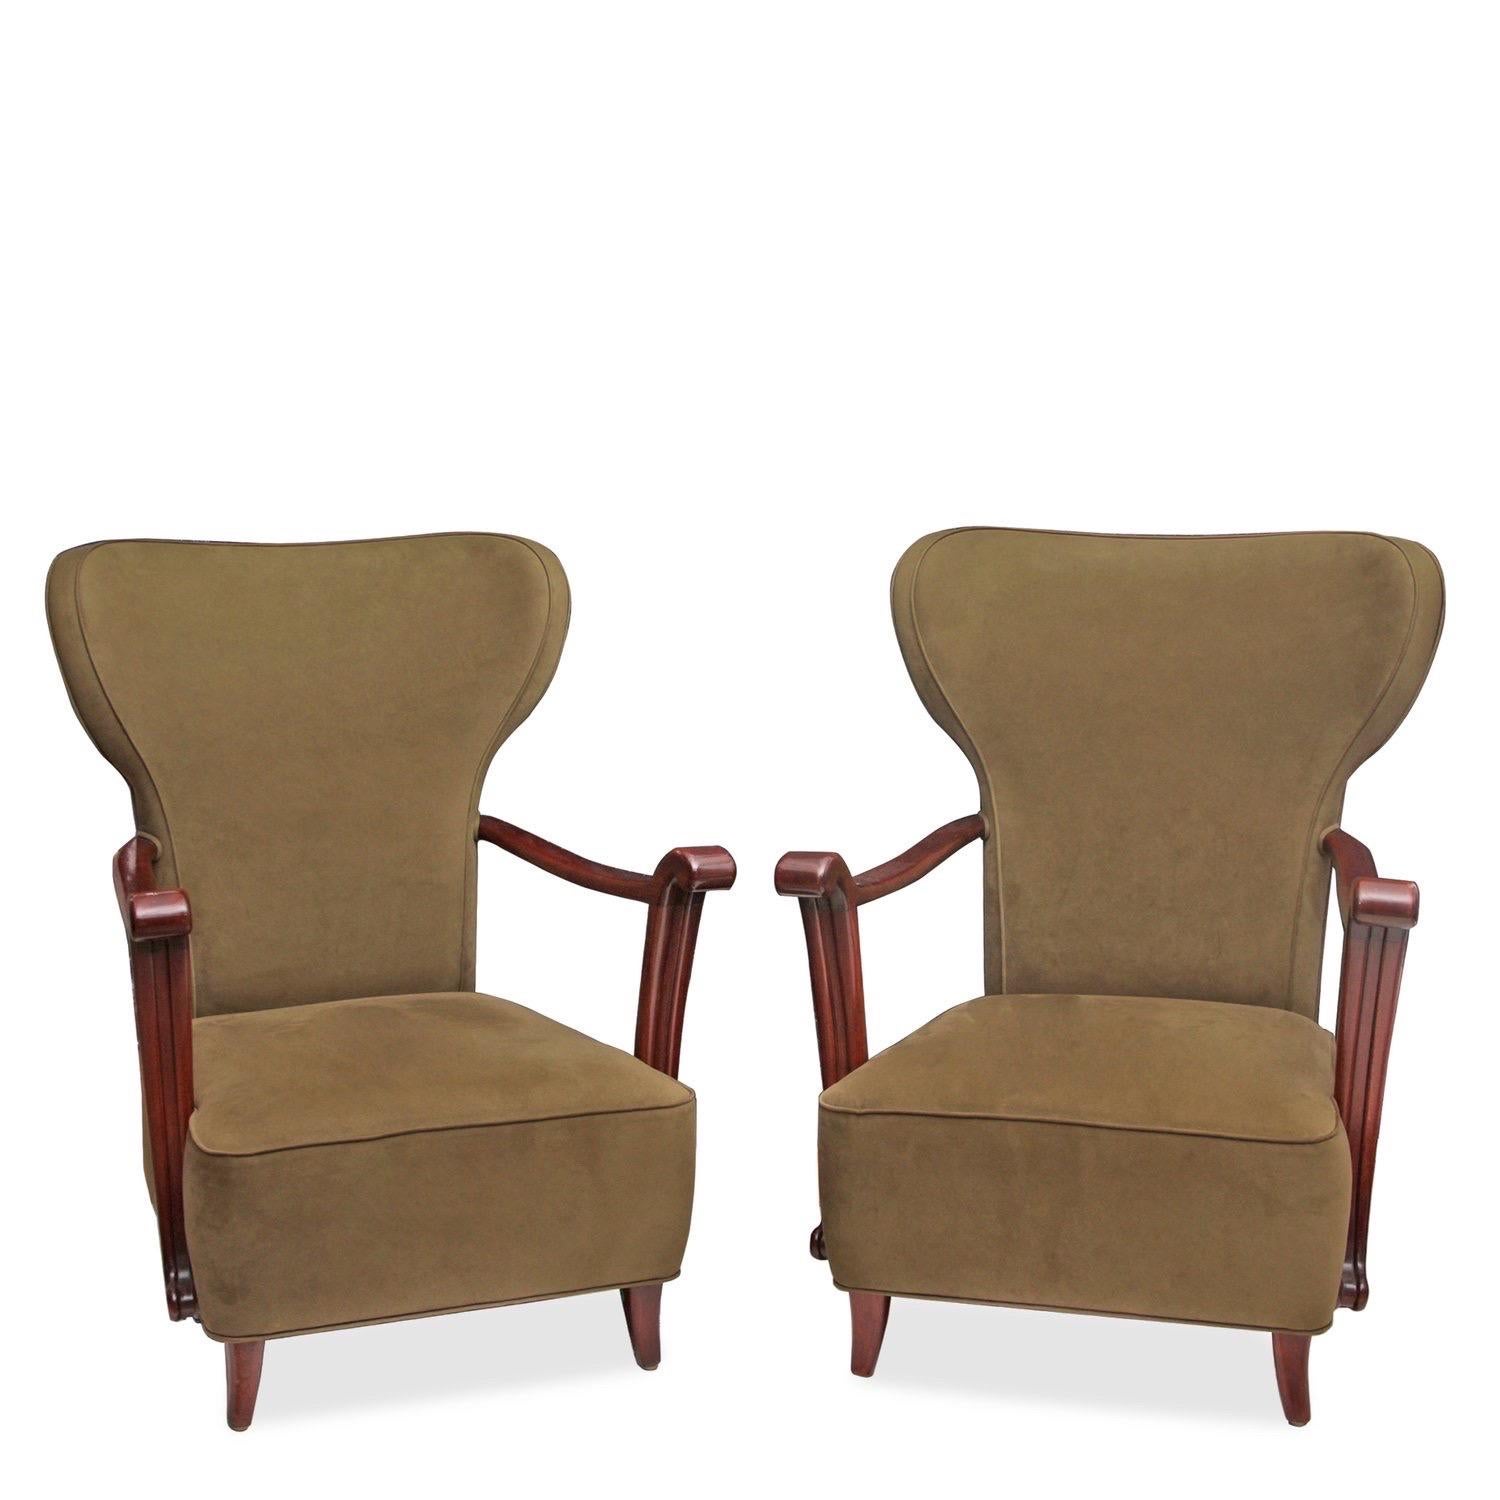 Paire de chaises de salon assorties de style wingback du milieu du siècle, avec accoudoirs en bois poli et tapisserie vert olive.

Italien, vers 1950.

Dimensions : 29 